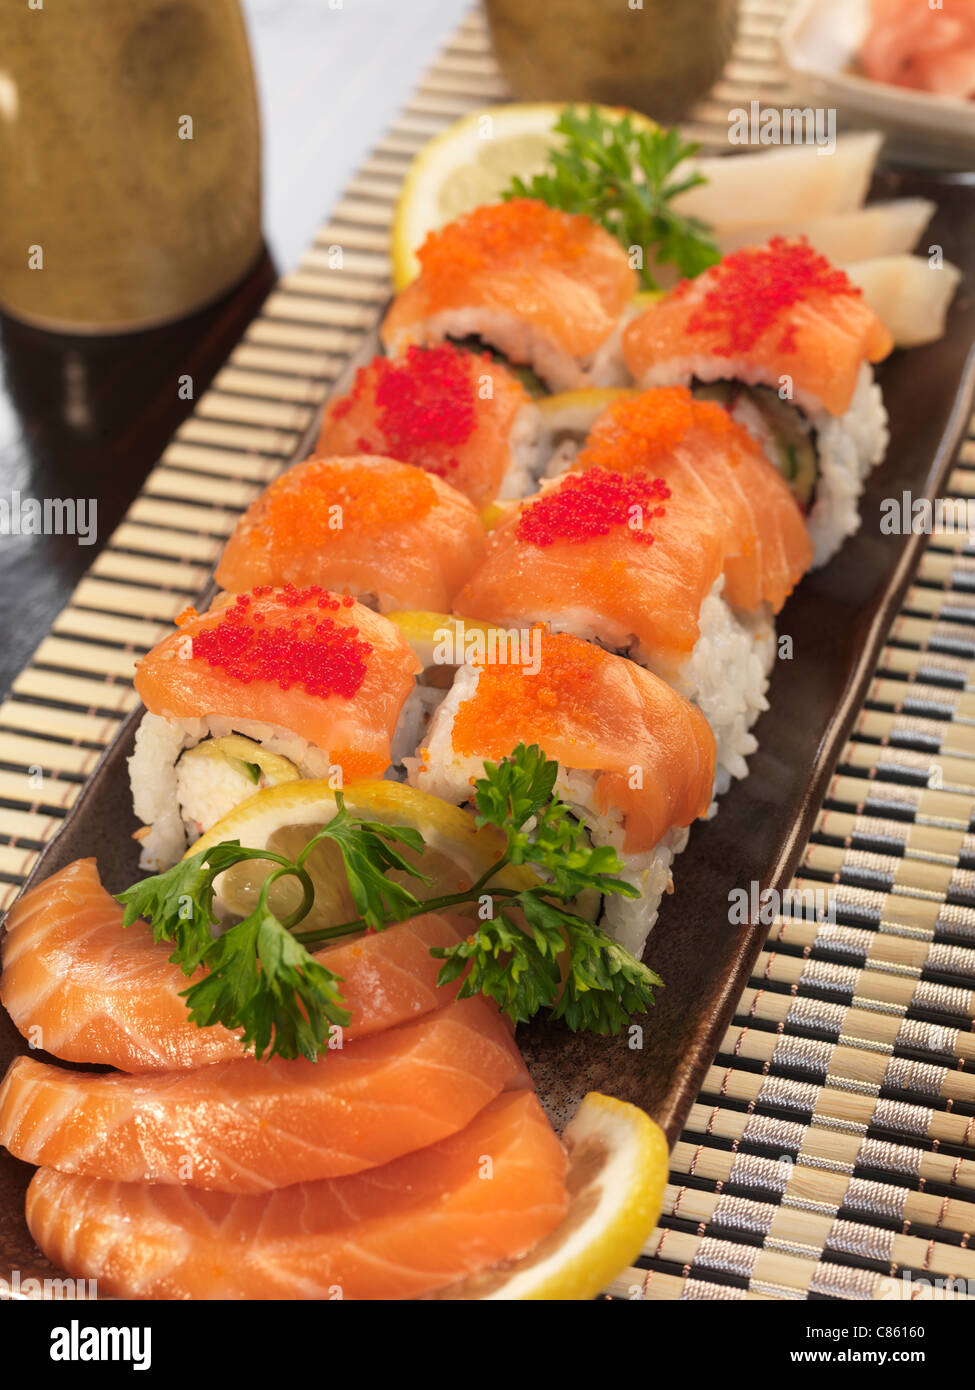 Served sushi rolls and sashimi Stock Photo